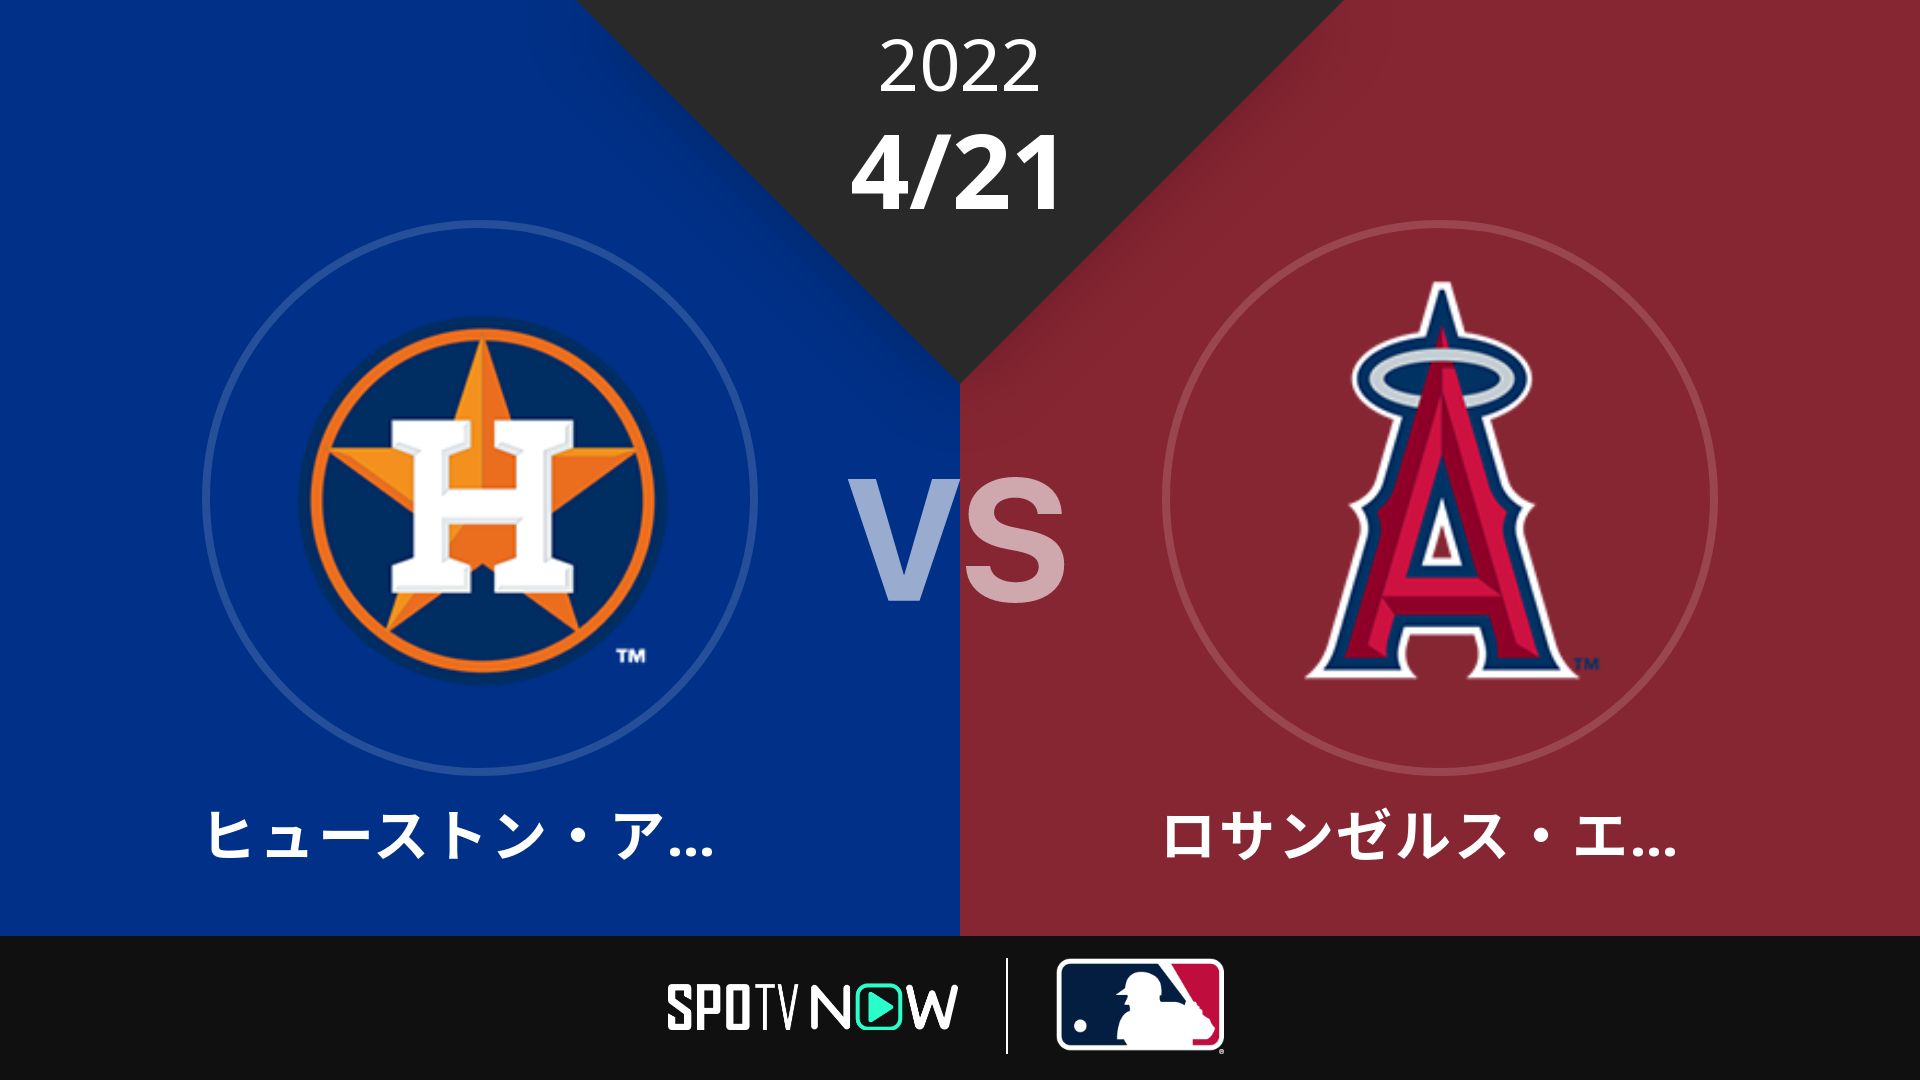 2022/4/21 アストロズ vs エンゼルス [MLB]